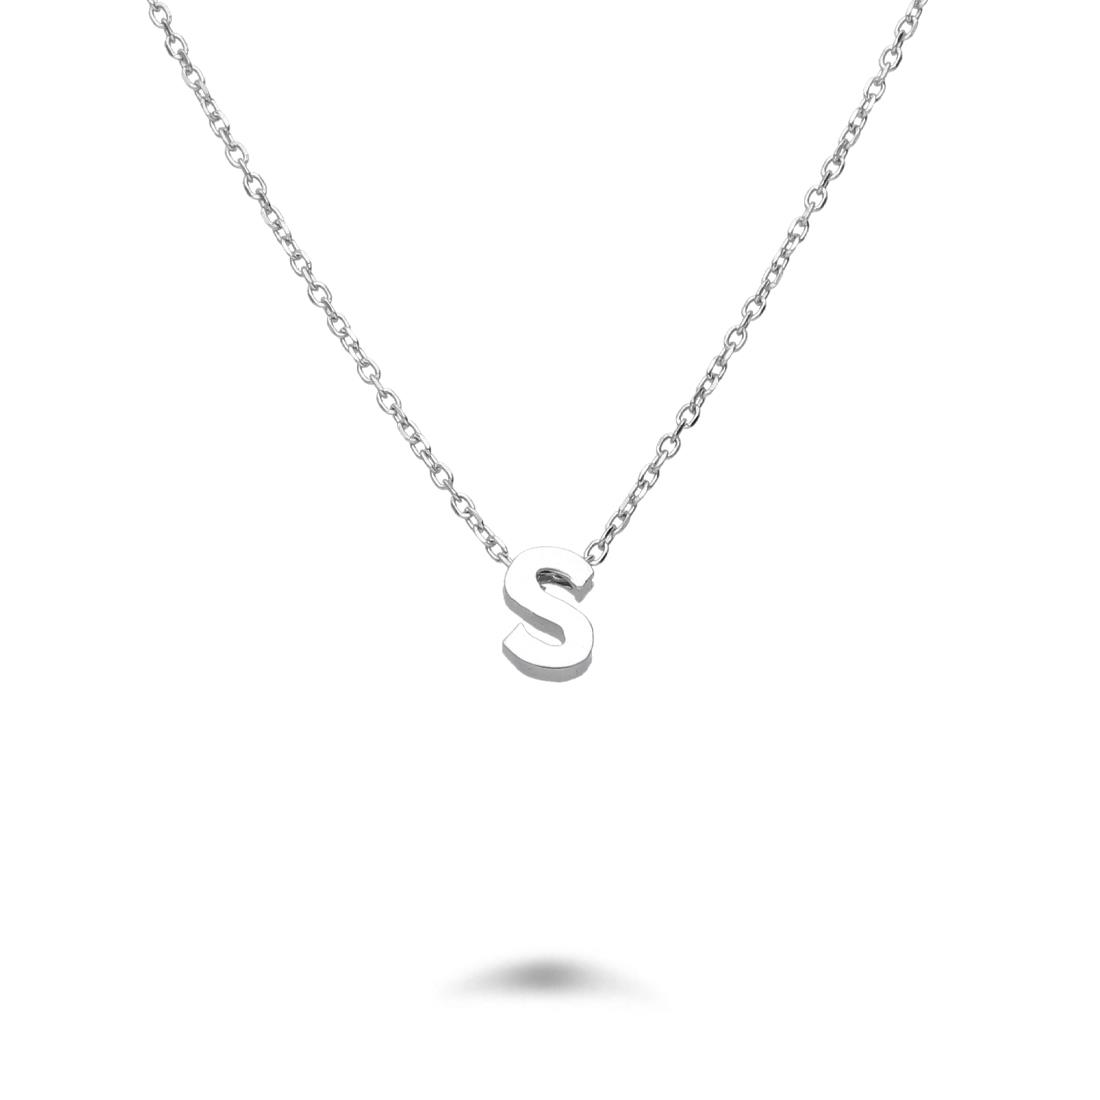 Rolò necklace in rhodium-plated silver with letter S - DESIDERI PREZIOSI